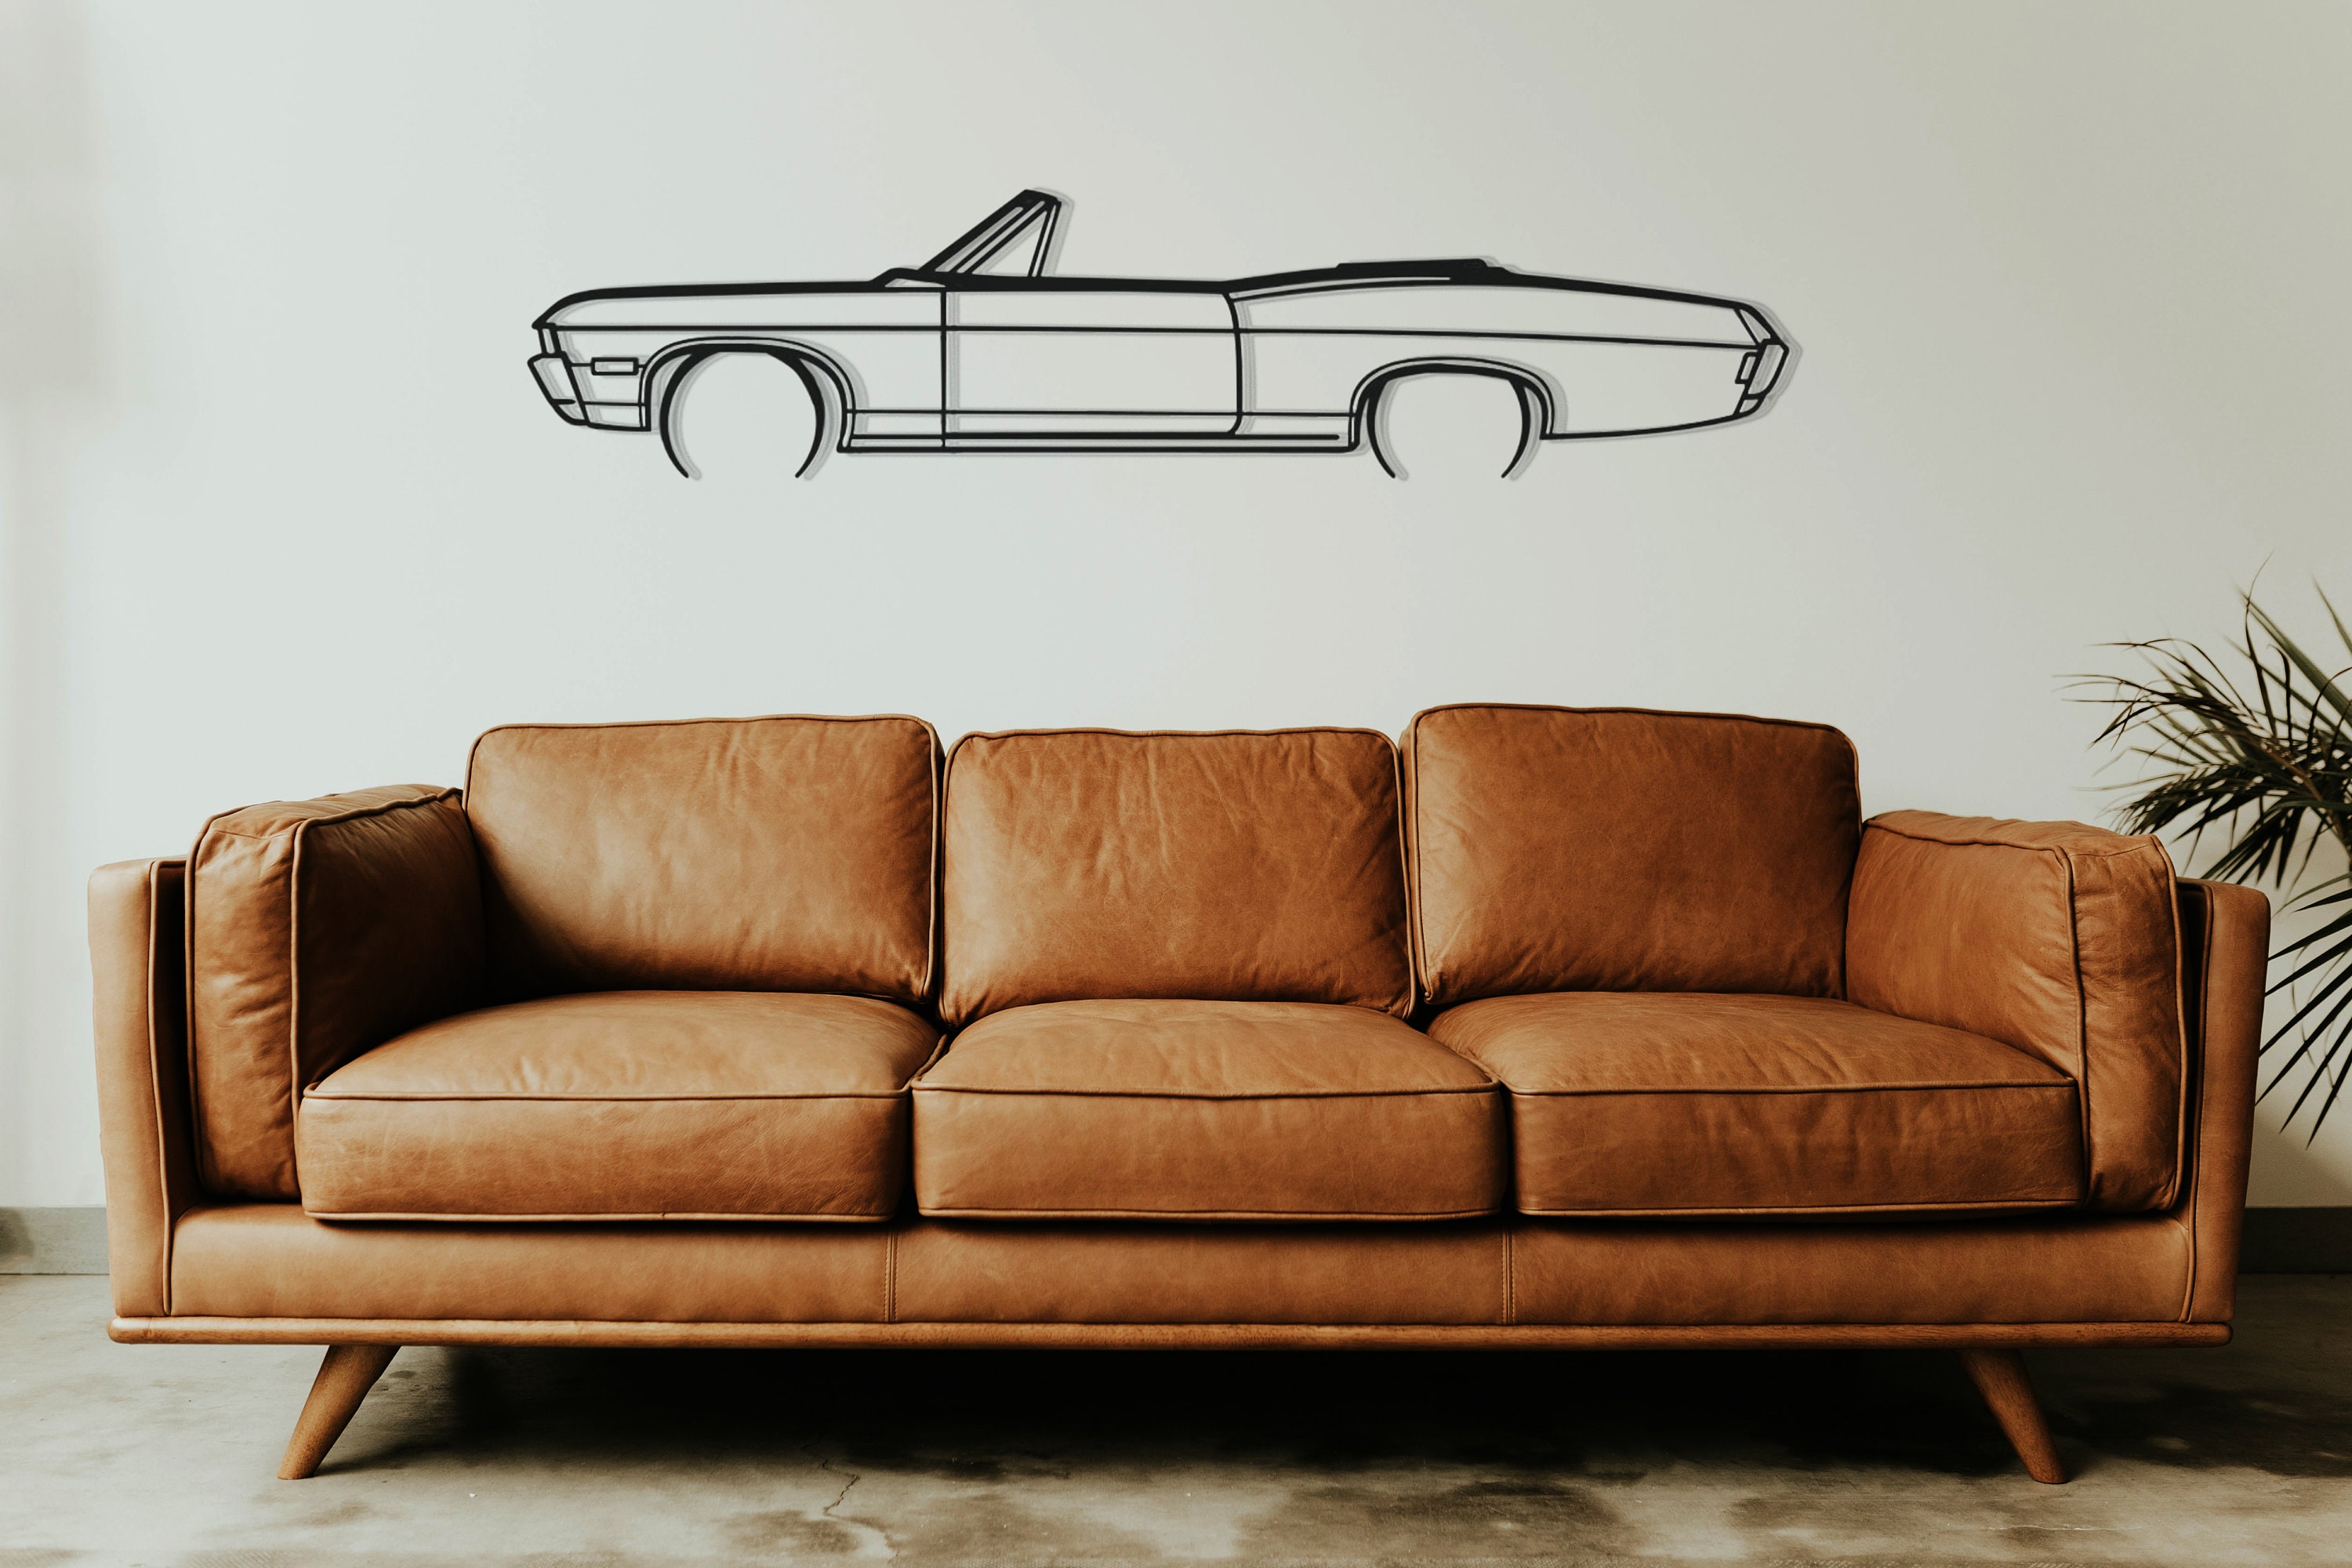 Impala 307 classic for sale  